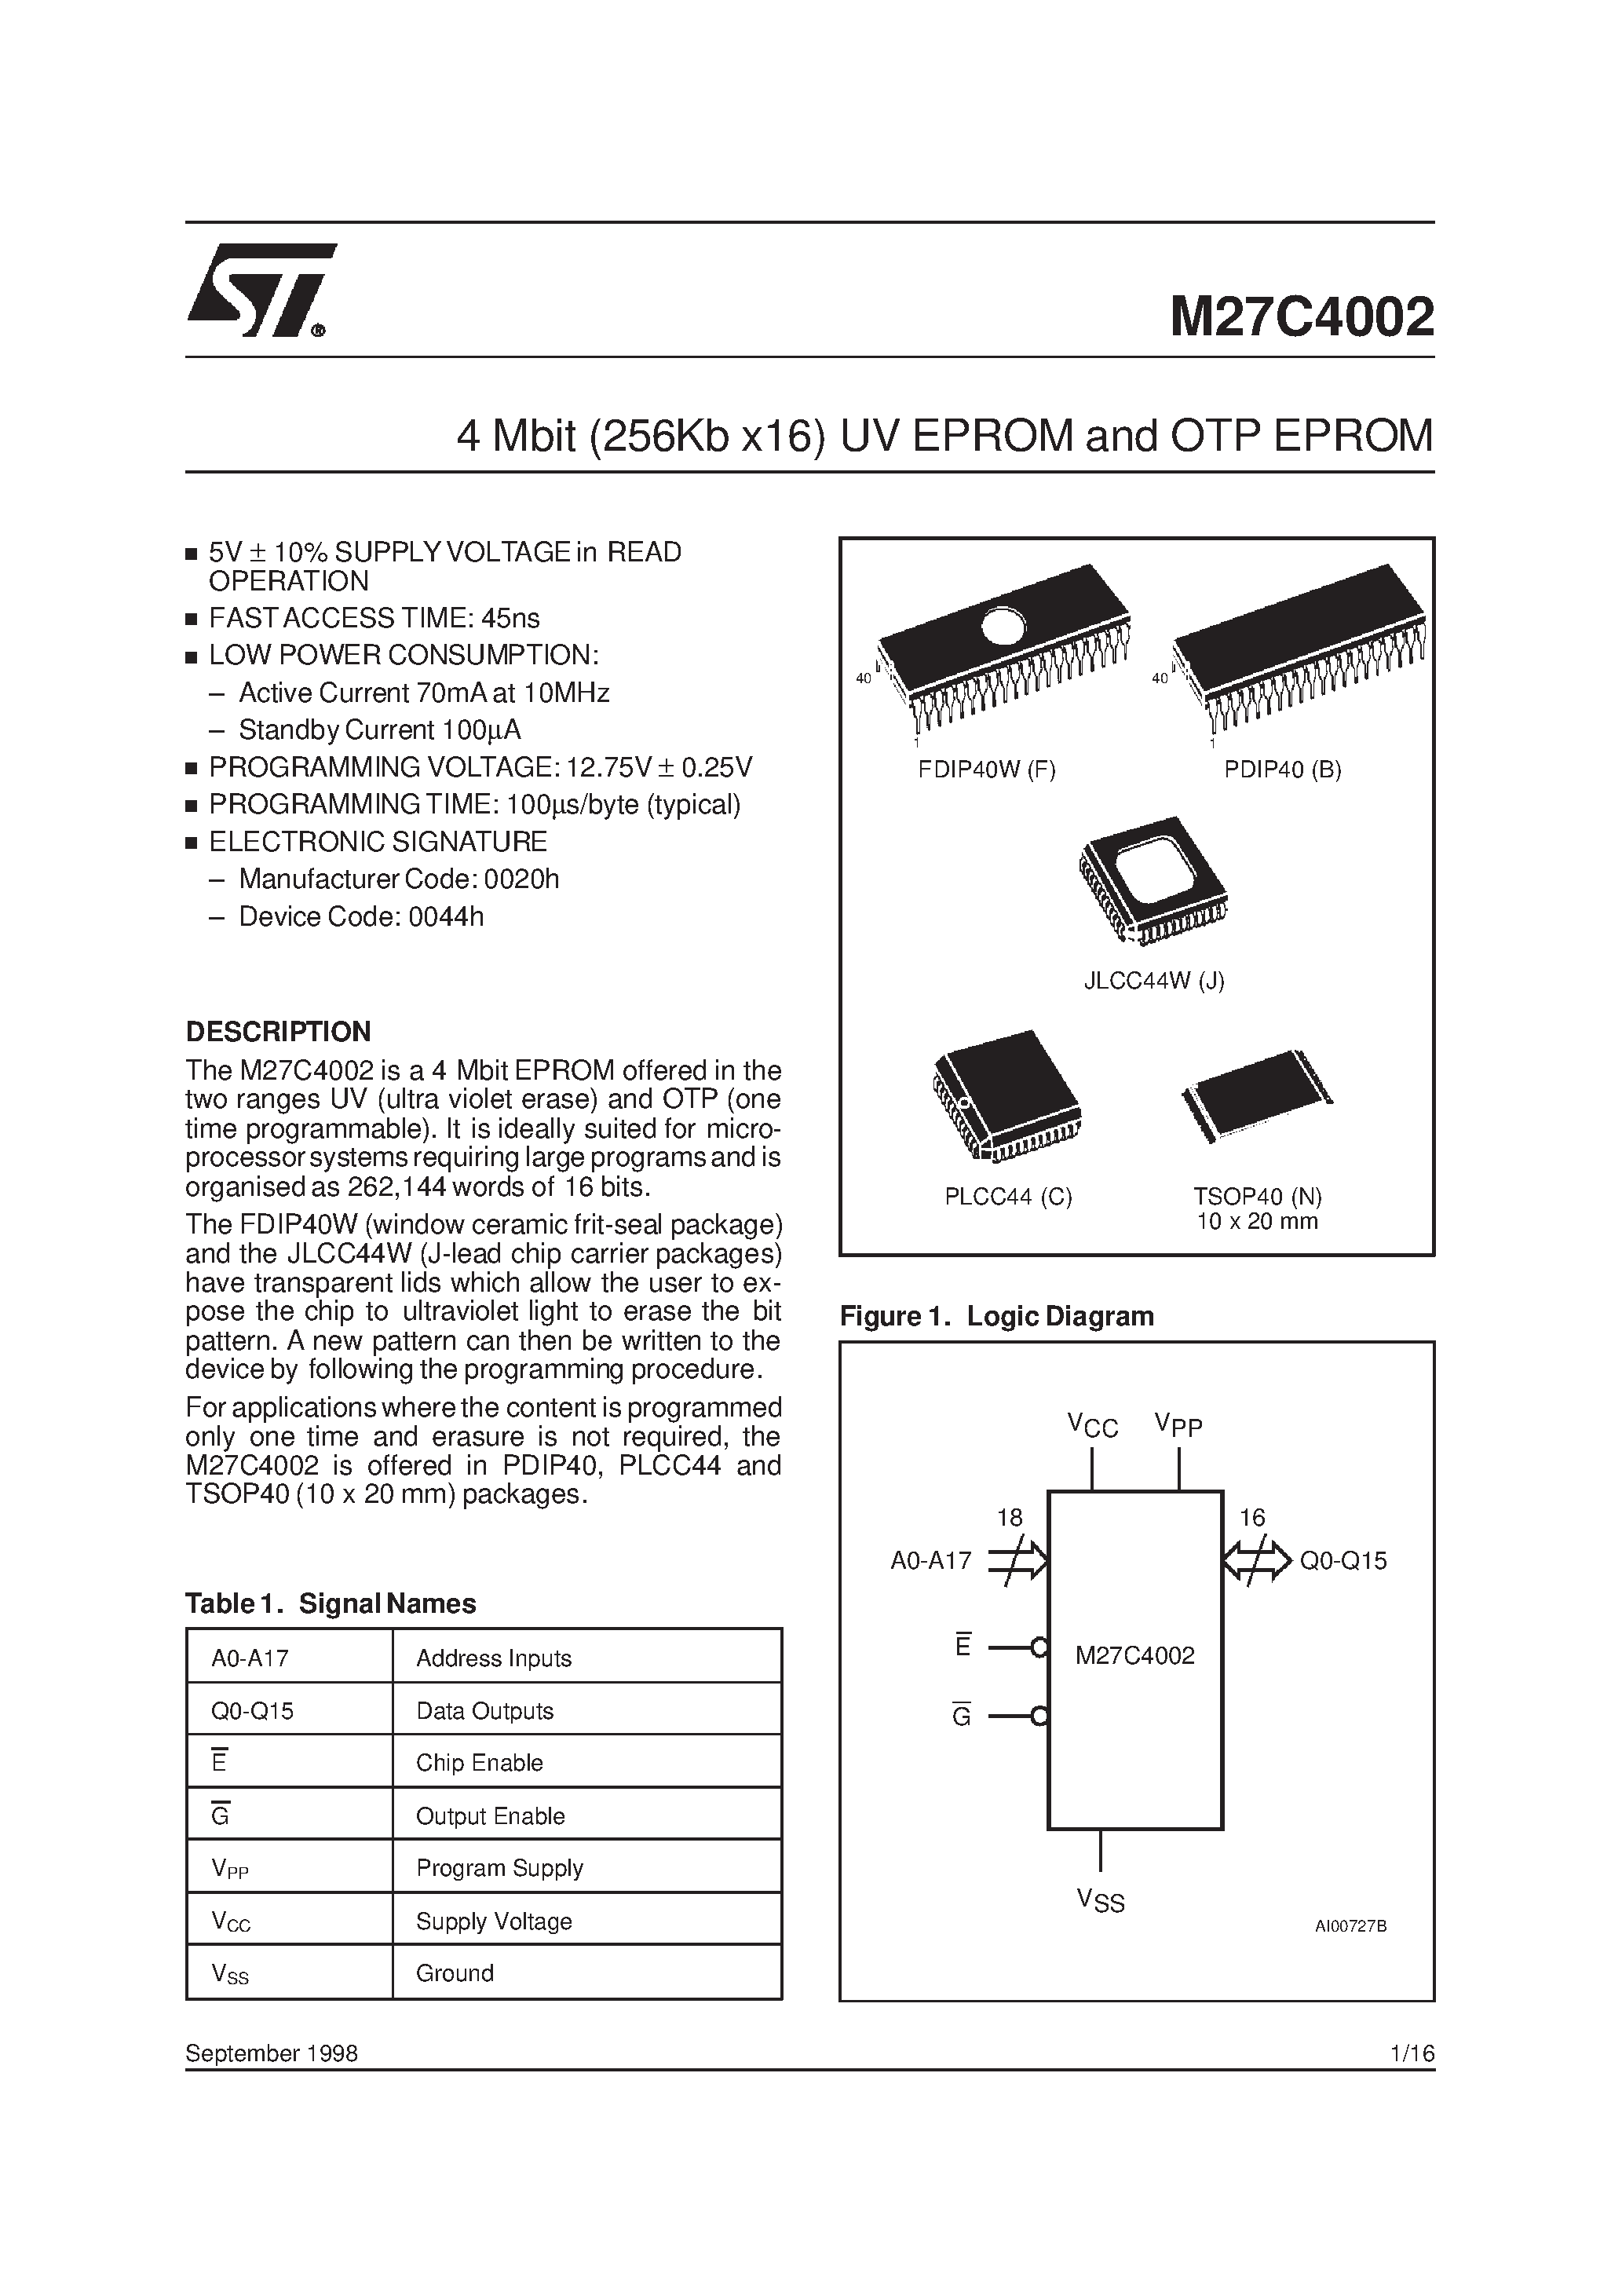 Datasheet M27C4002-10XB6TR - 4 Mbit 256Kb x16 UV EPROM and OTP EPROM page 1